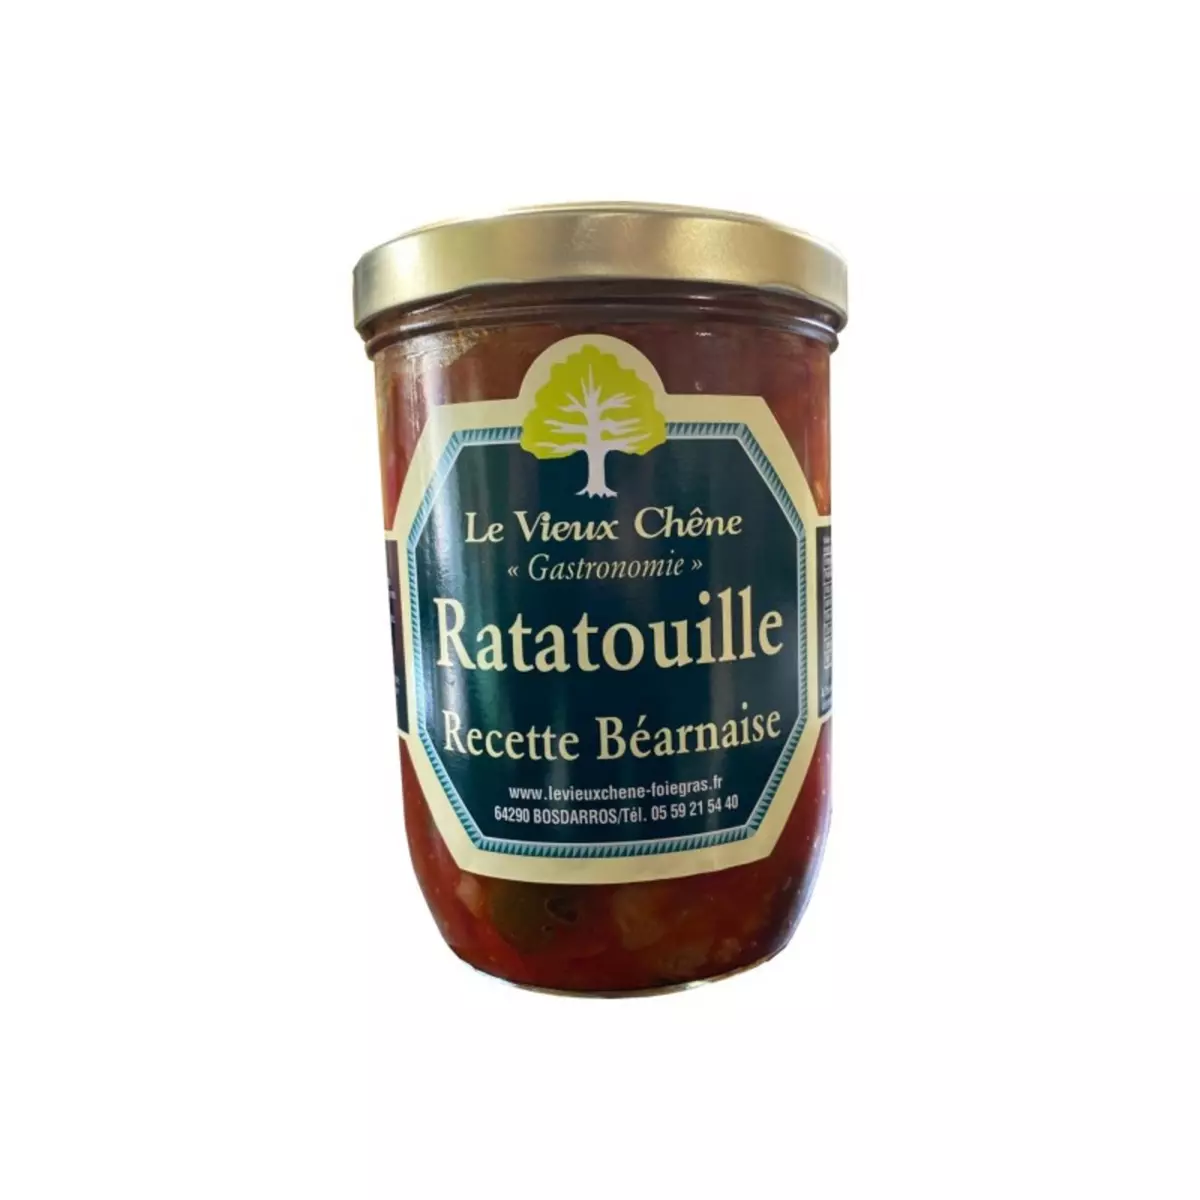 LE VIEUX CHÊNE Ratatouille recette Béarnaise 750g